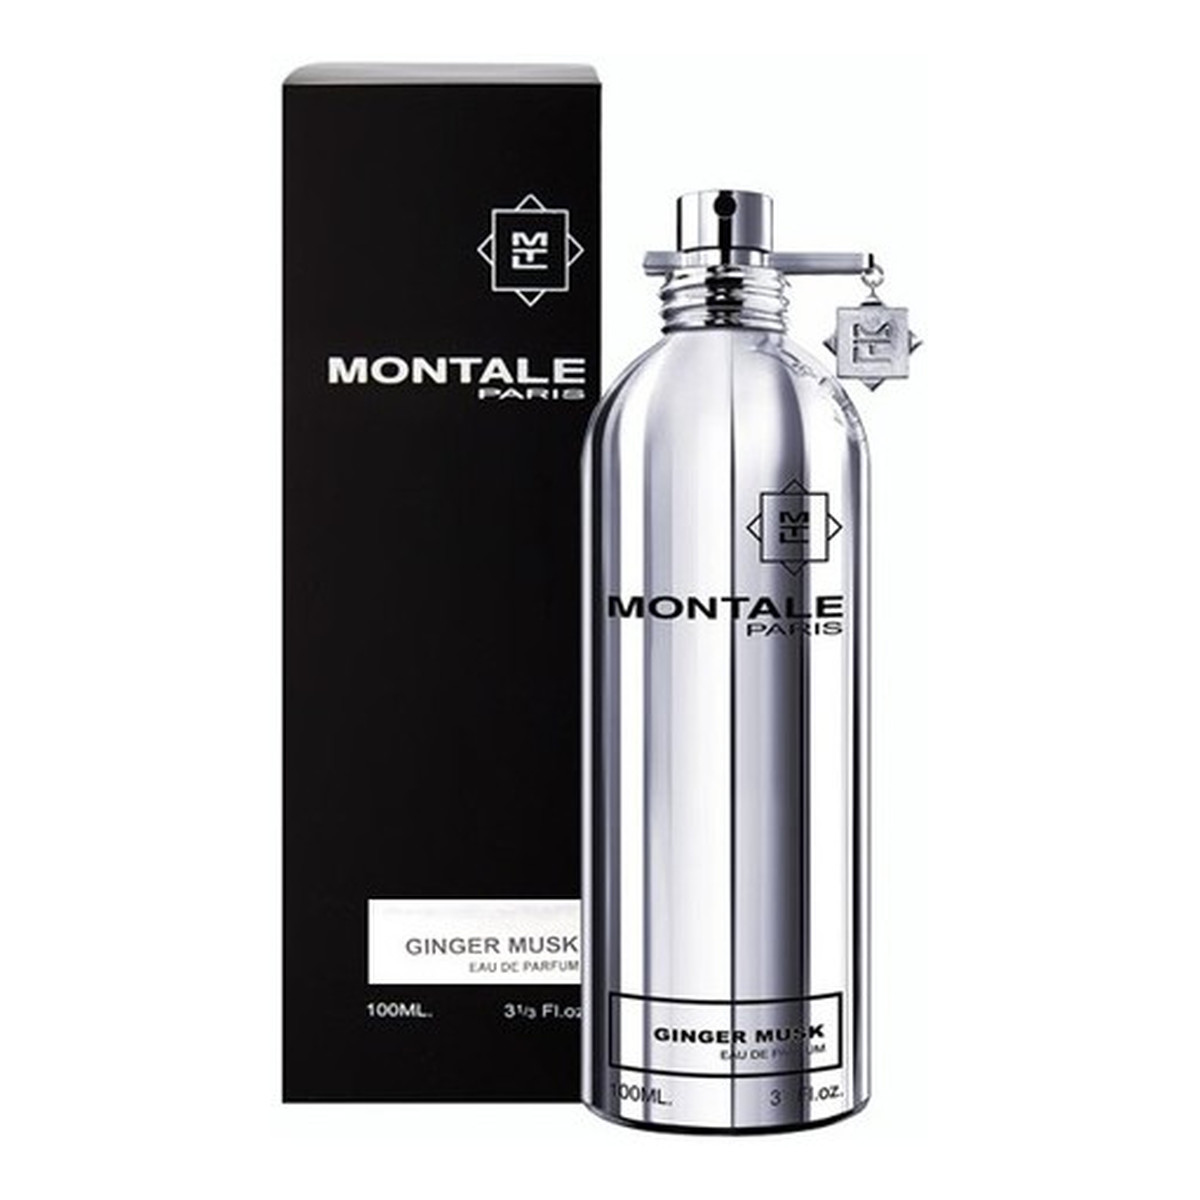 Montale Ginger Musk Unisex woda perfumowana spray 100ml